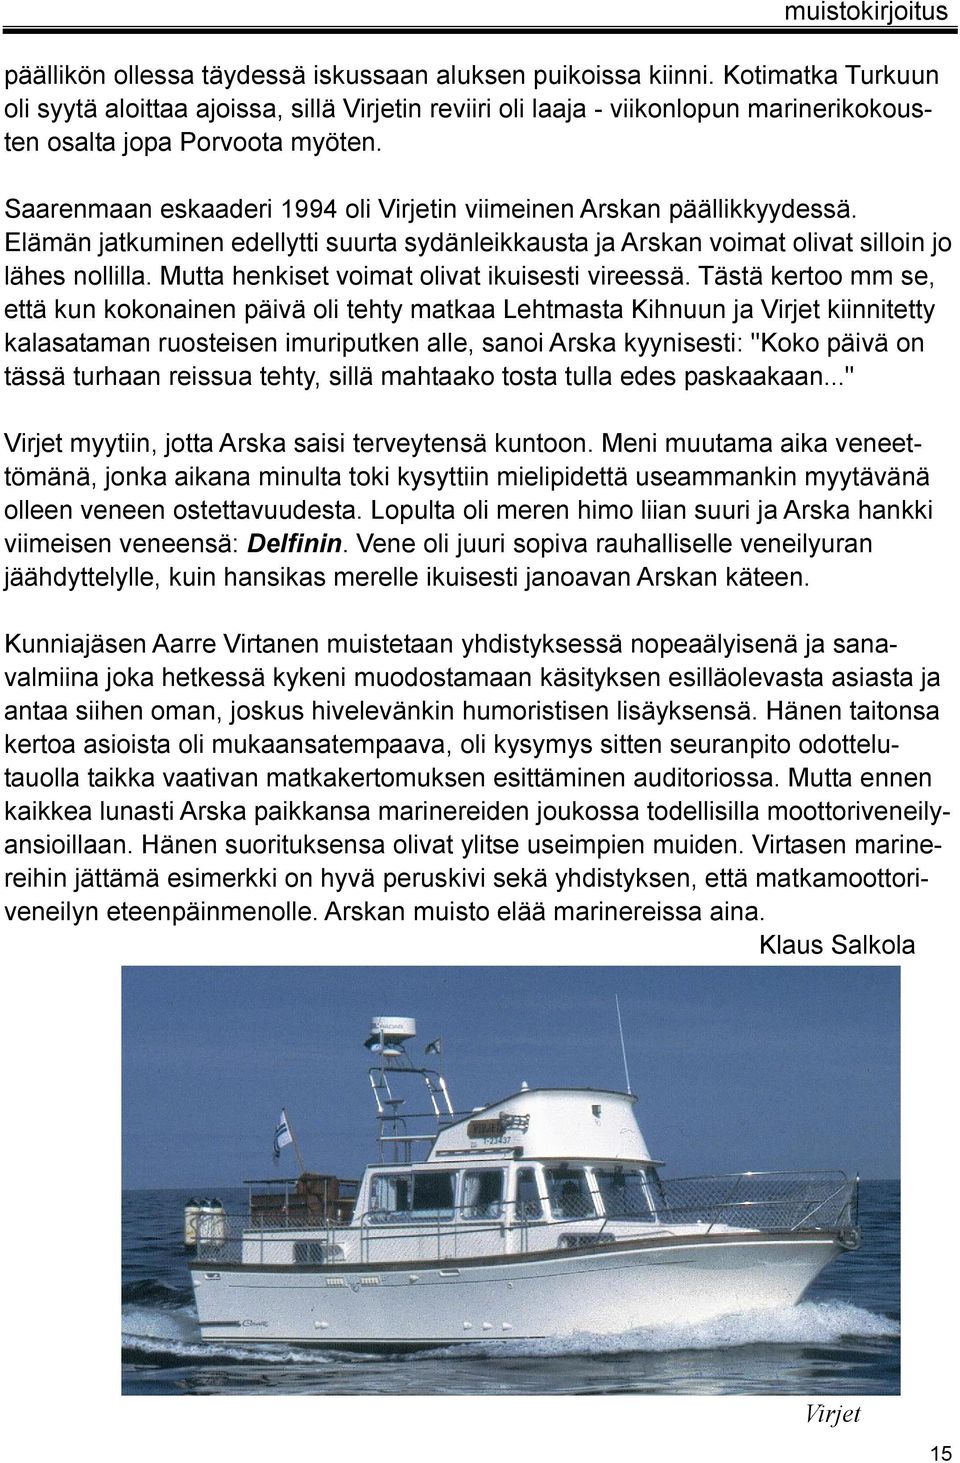 Saarenmaan eskaaderi 1994 oli Virjetin viimeinen Arskan päällikkyydessä. Elämän jatkuminen edellytti suurta sydänleikkausta ja Arskan voimat olivat silloin jo lähes nollilla.